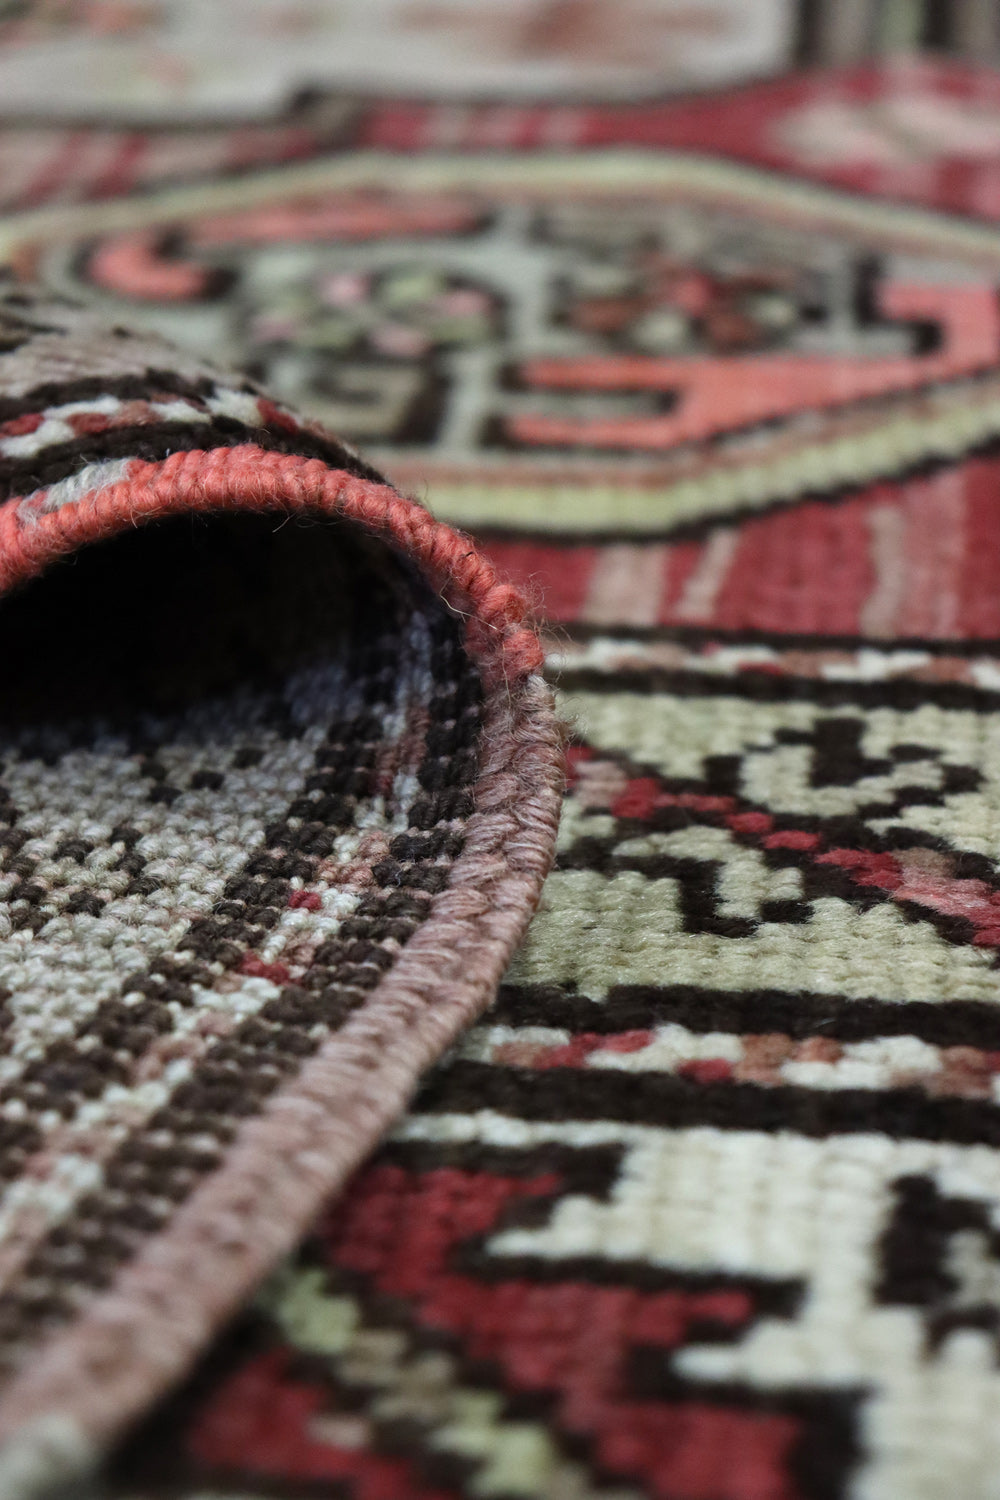 Vintage Karabagh Handwoven Tribal Rug, J66885